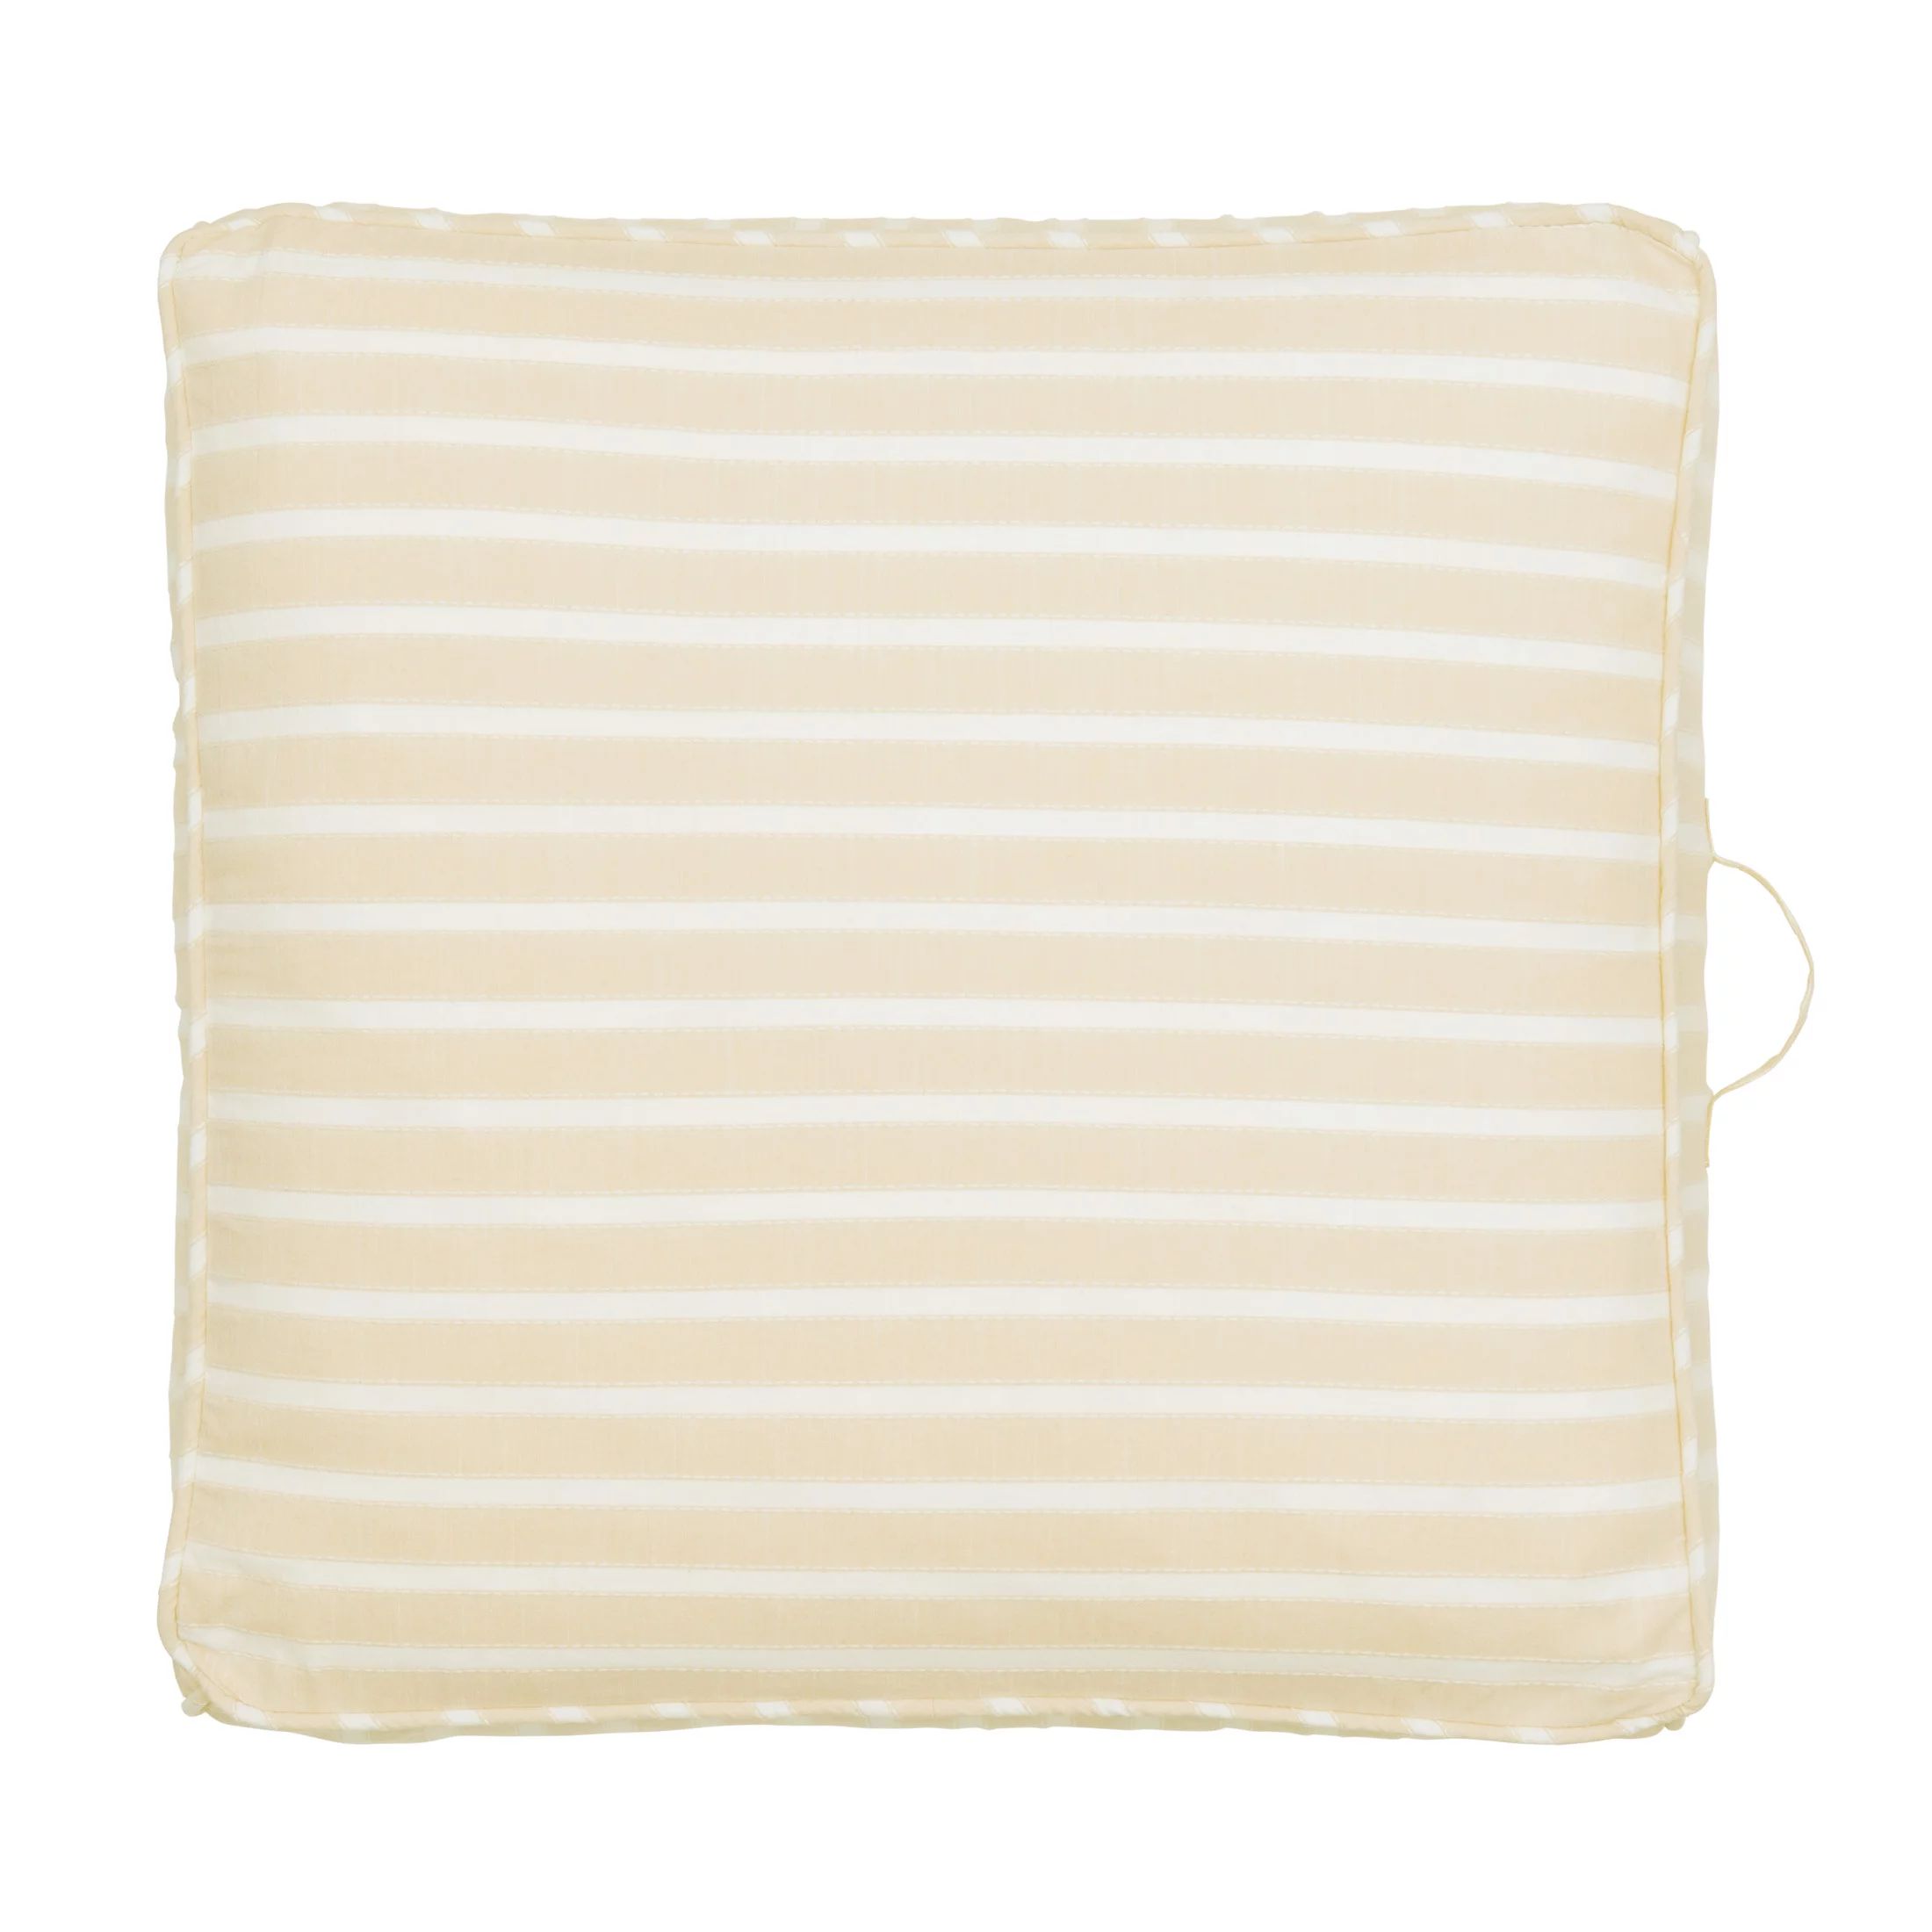 Gap Home Yarn Dyed Chambray Stripe Indoor Single Floor Cushion with Handle Khaki 24" x 24" x 5" | Walmart (US)